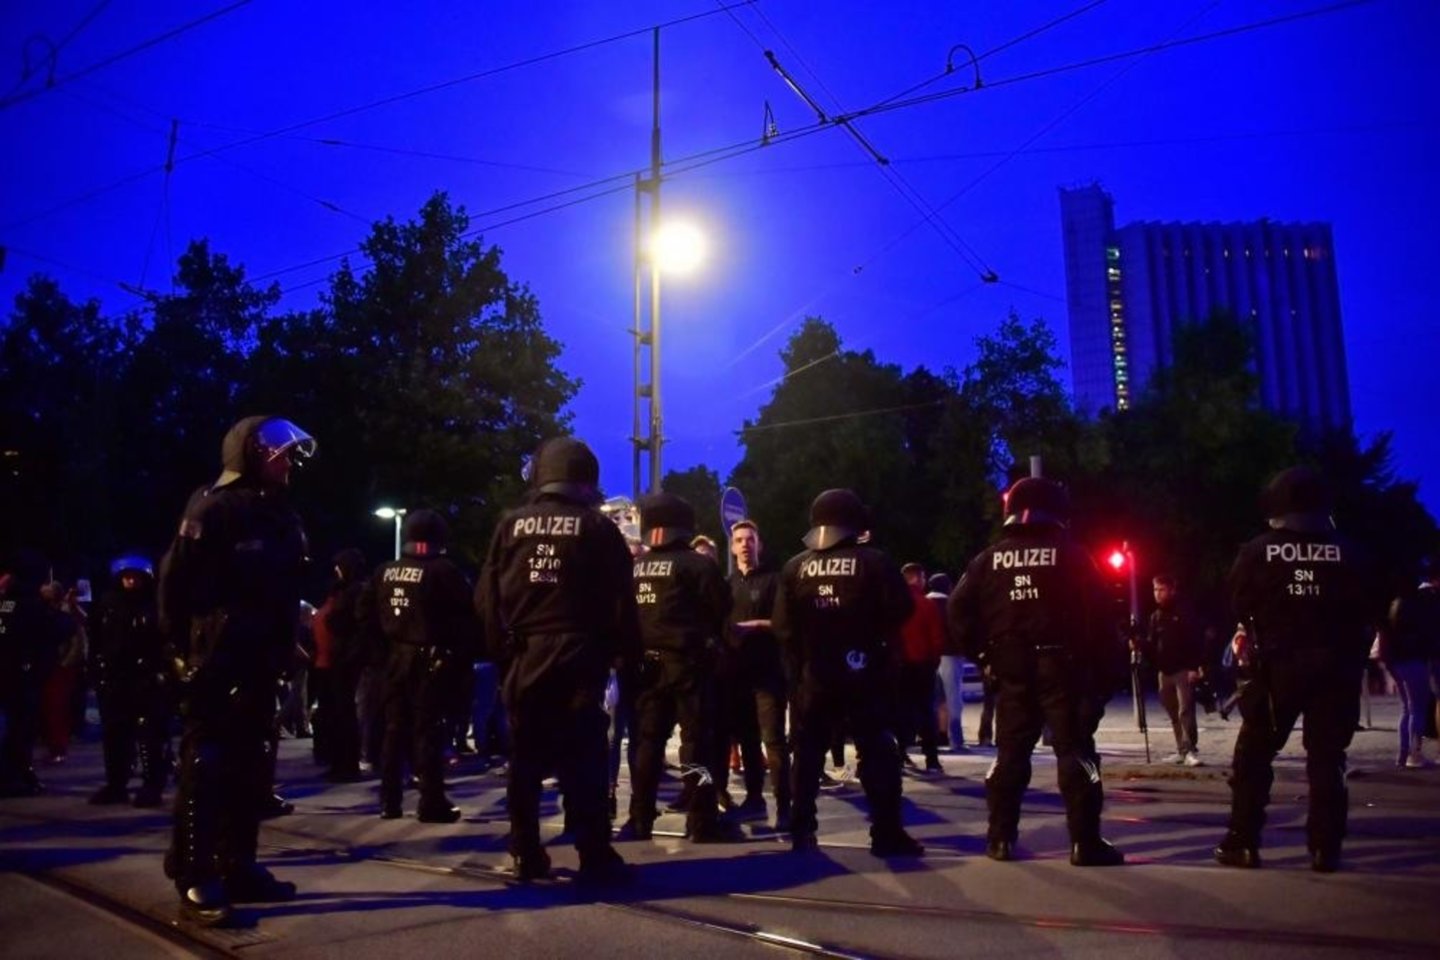  Policija apsupo dalį Chemnico ir evakavo žmones iš kelių pastatų.<br> Reuters/Scanpix nuotr.